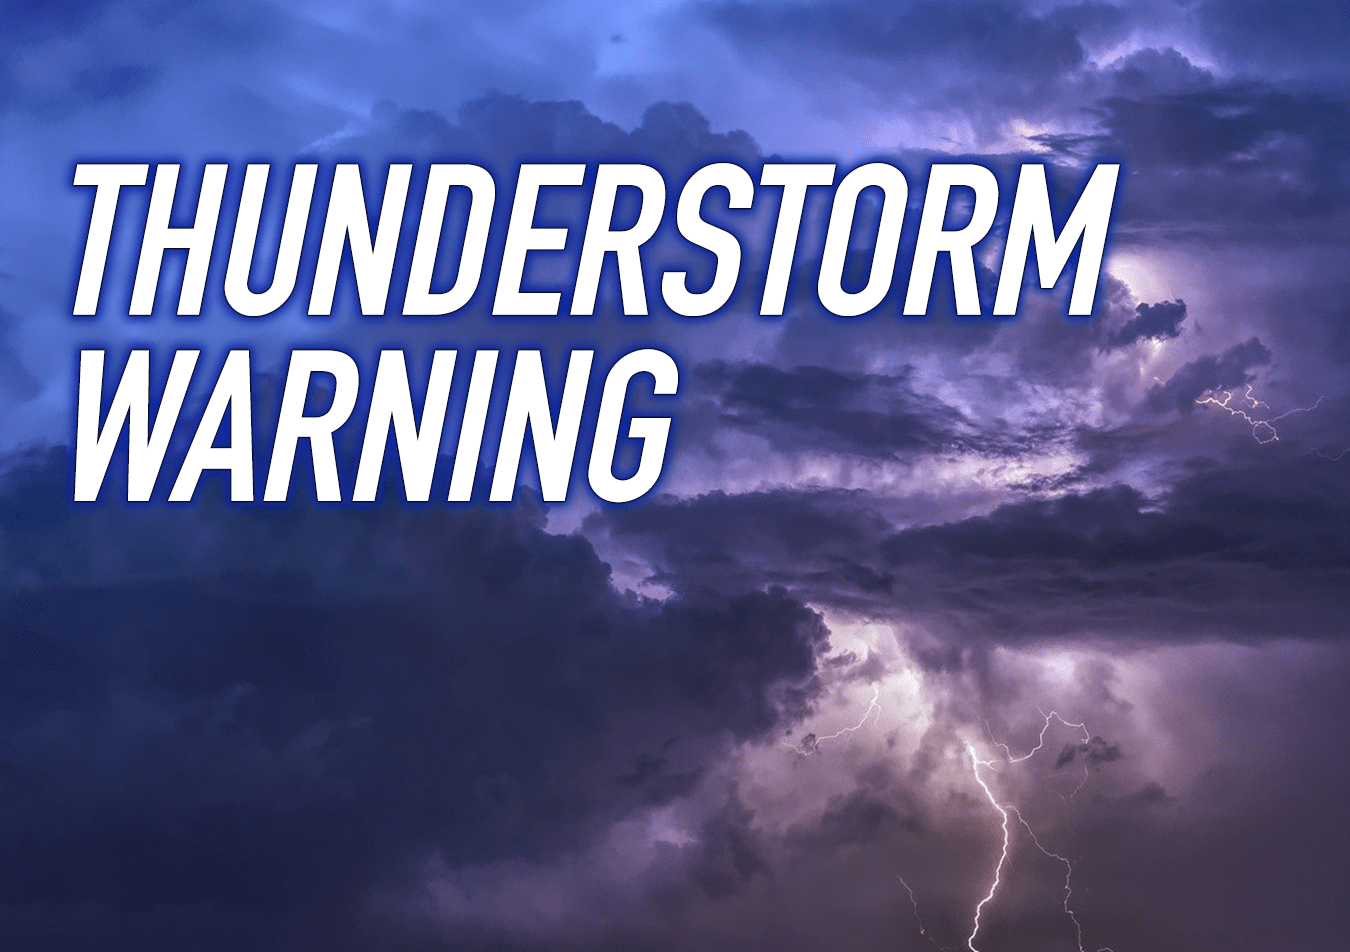 Severe Thunderstorm warning Tuesday for Boundary, West Kootenay, Kootenay Lake, Arrow Lakes/Slocan Lake